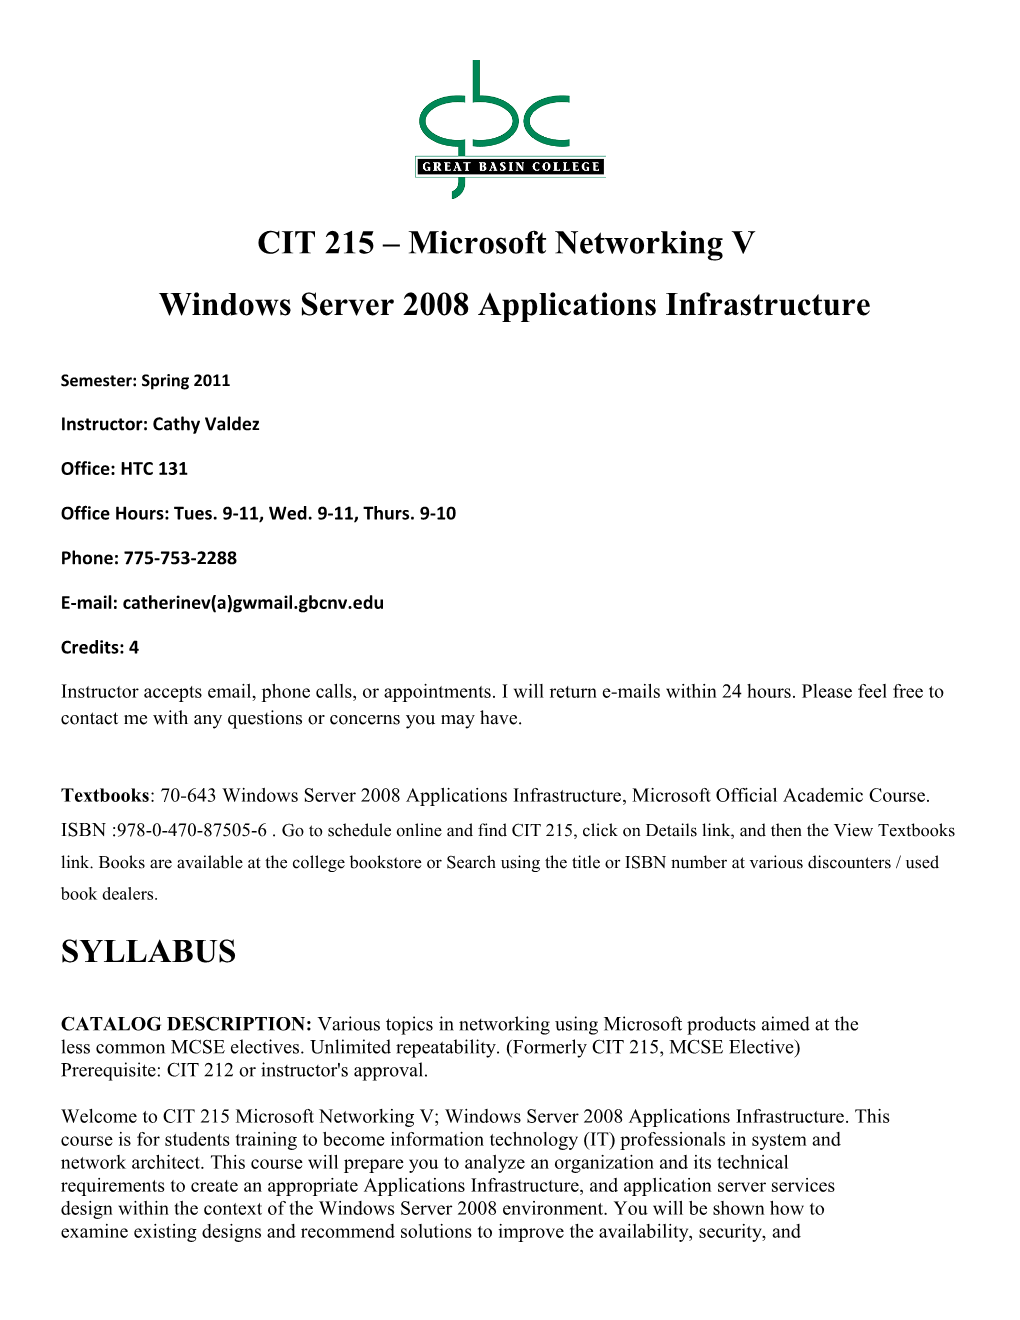 CIT 215 Microsoft Networking V